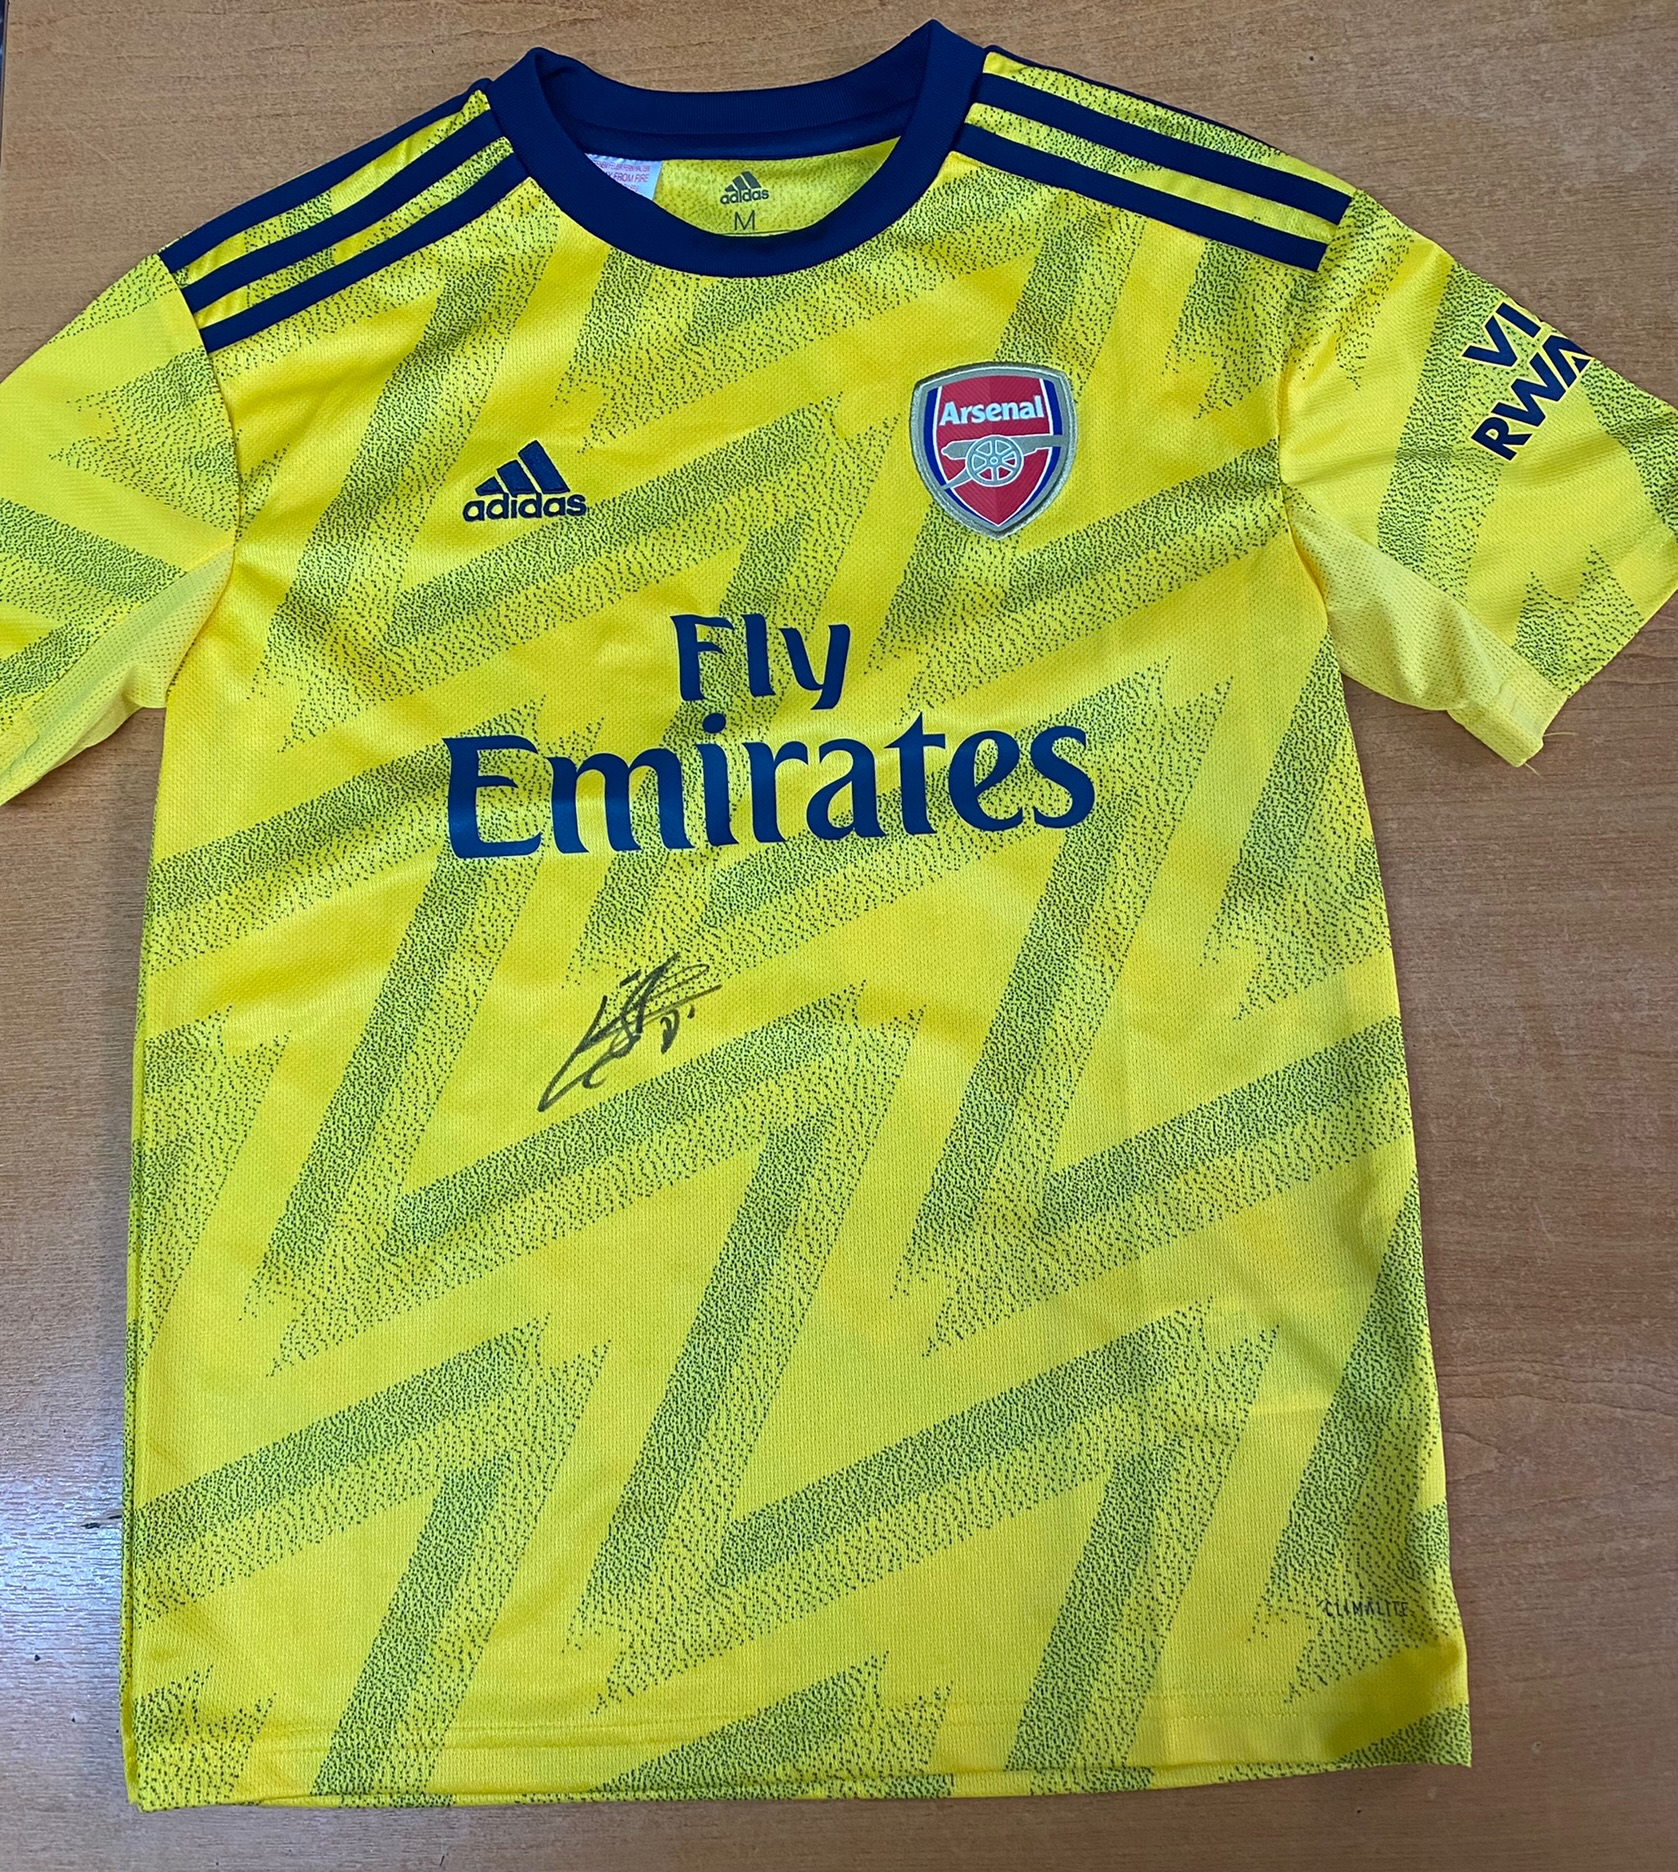 Arsenal Signed Emile Smith Rowe Shirt Age 11/12 Years Old - Image 2 of 3